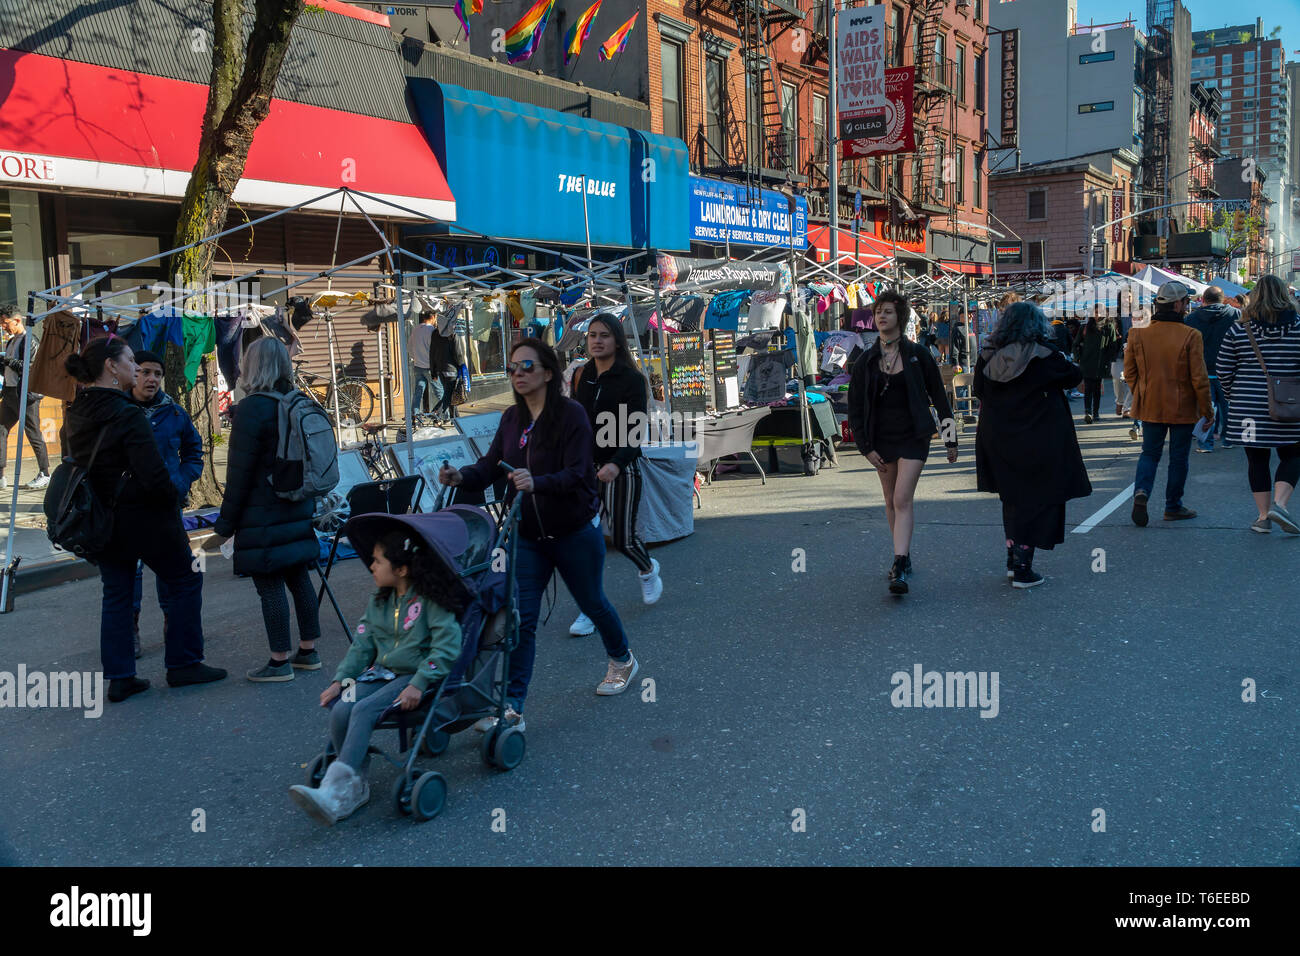 La foule profiter des activités qui leur sont offertes lors d'une foire de rue dans le quartier de Chelsea, New York sur une chaude Samedi 27 Avril, 2019. (Â© Richard B. Levine) Banque D'Images